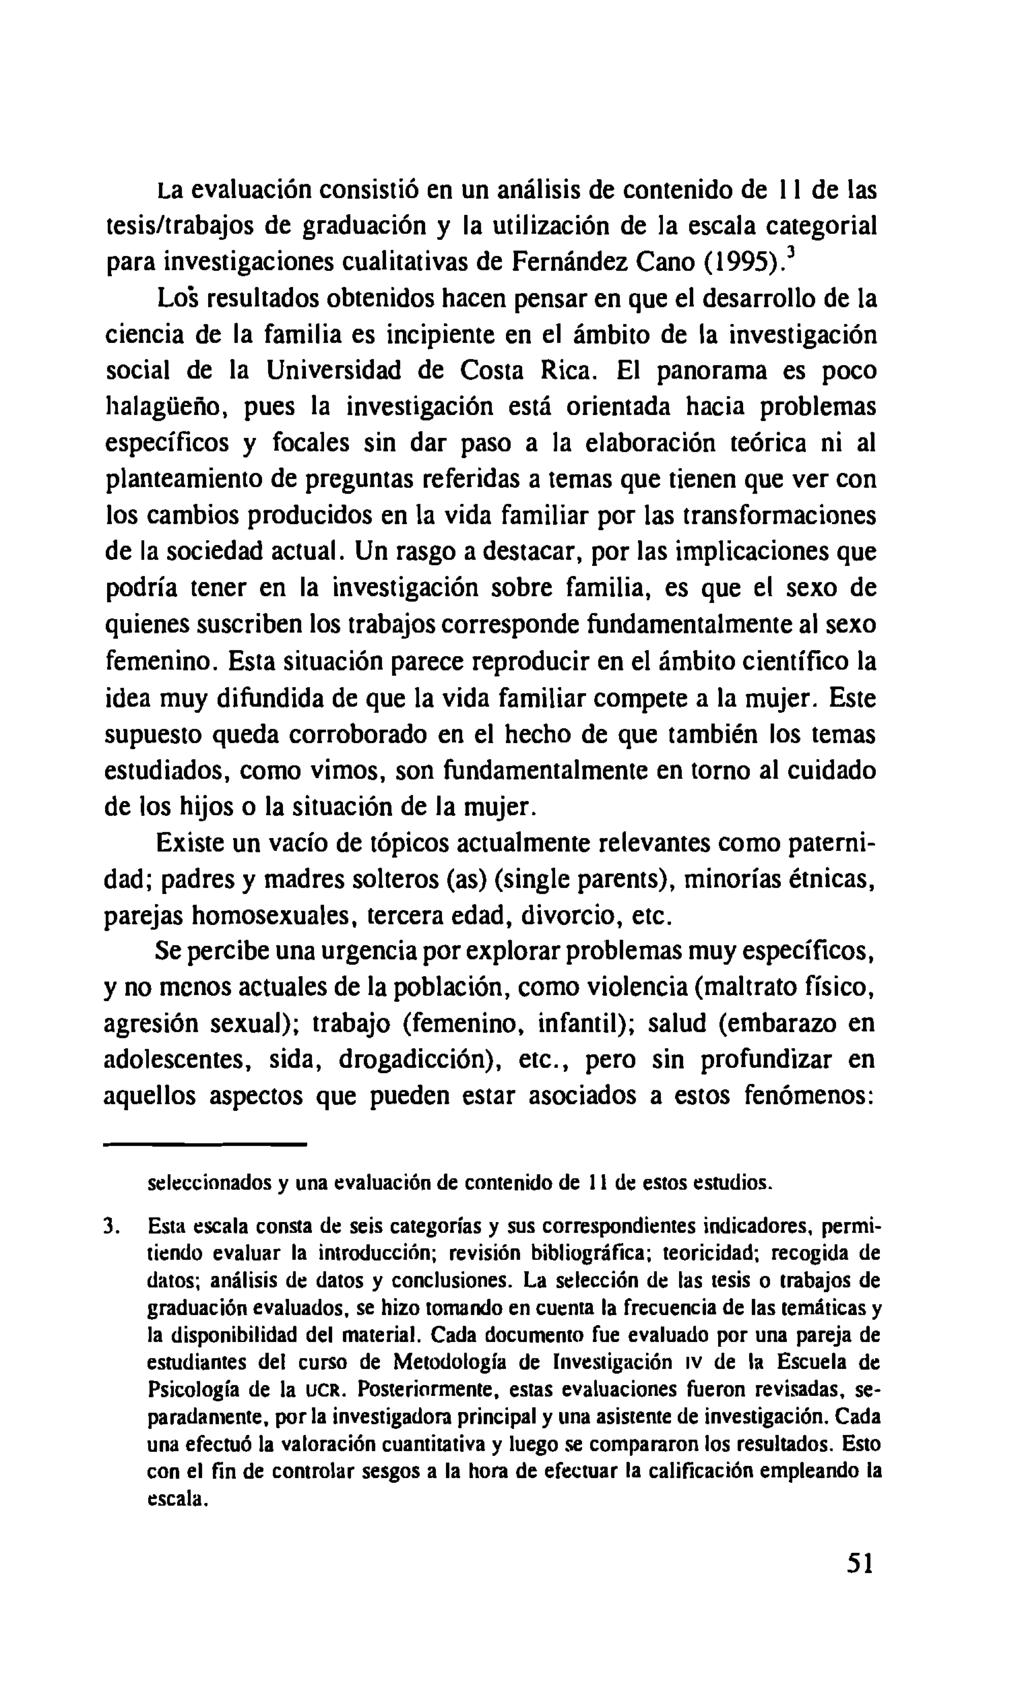 La evaluación consistió en un análisis de contenido de II de las tesis/trabajos de graduación y la utilización de la escala categorial para investigaciones cualitativas de Fernández Cano (1995).